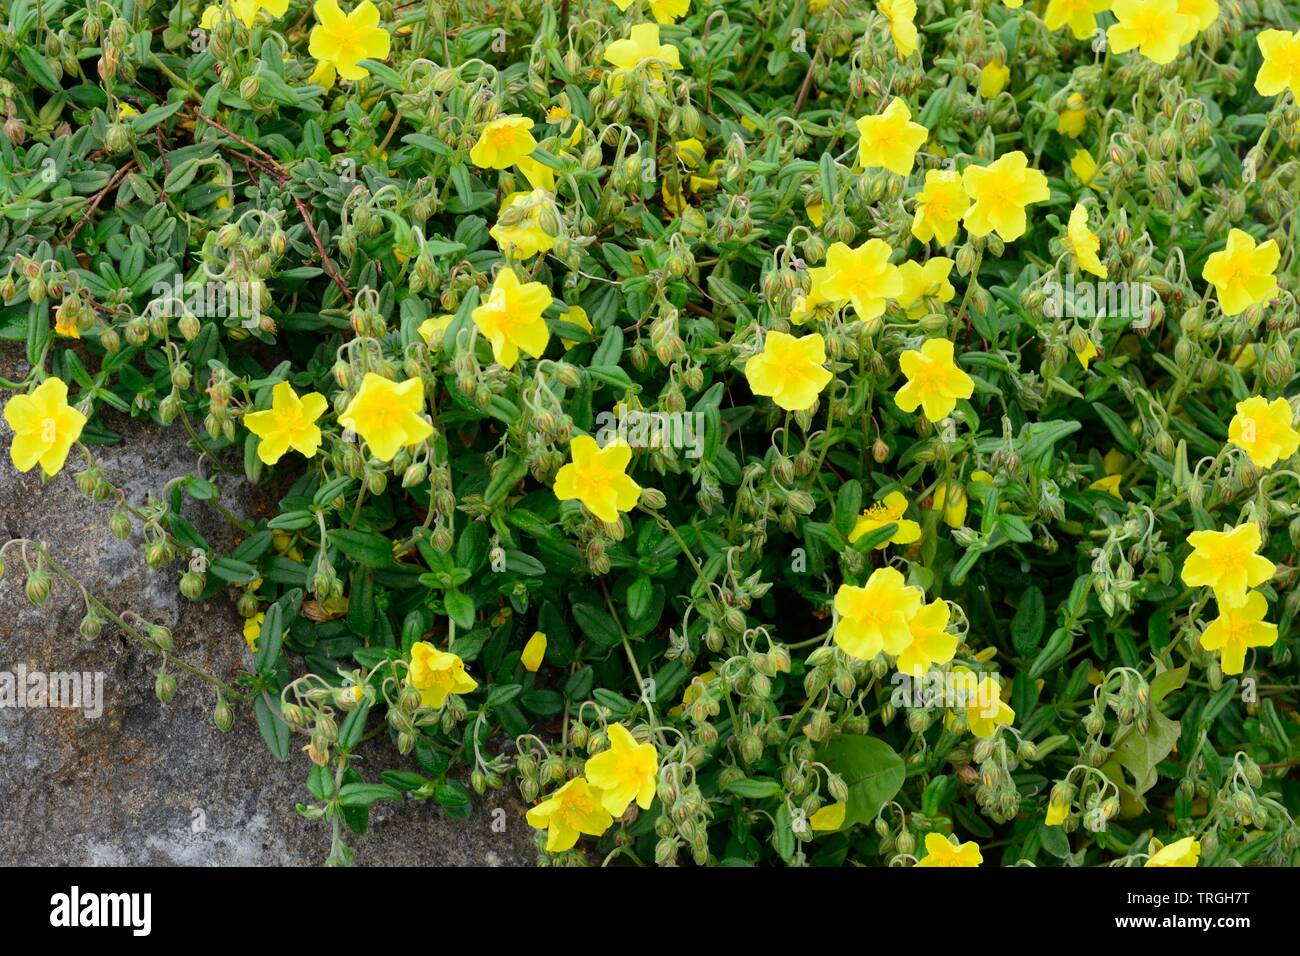 Helianthemum nummularium common rock rose yellow flowers Stock Photo